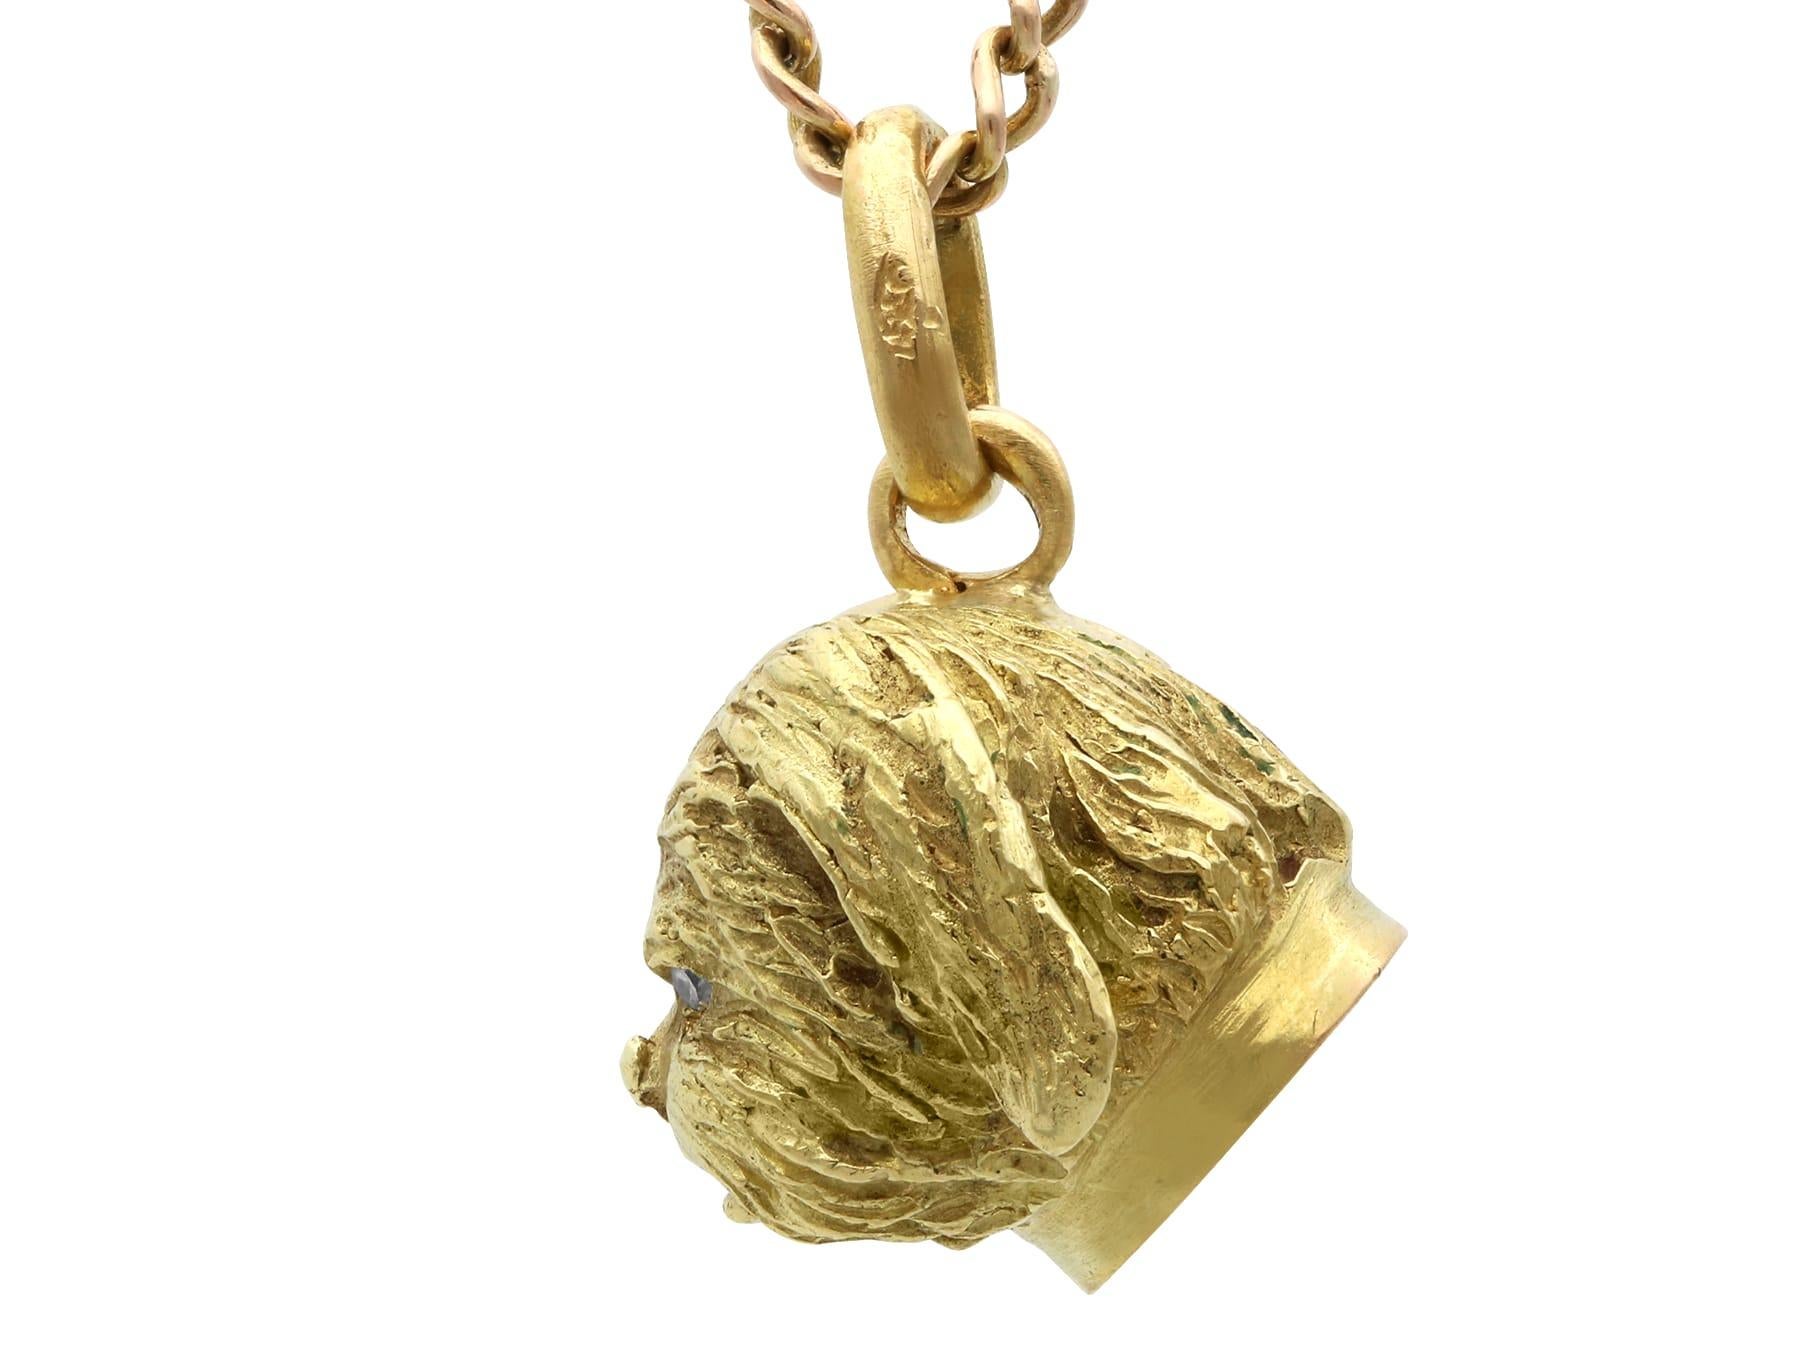 Un beau et impressionnant pendentif ancien en or jaune 18 carats et diamant de 0,02 carat en forme de chien, qui fait partie de nos diverses collections de bijoux animaliers.

Ce pendentif antique, fin et impressionnant, a été réalisé en or jaune 18